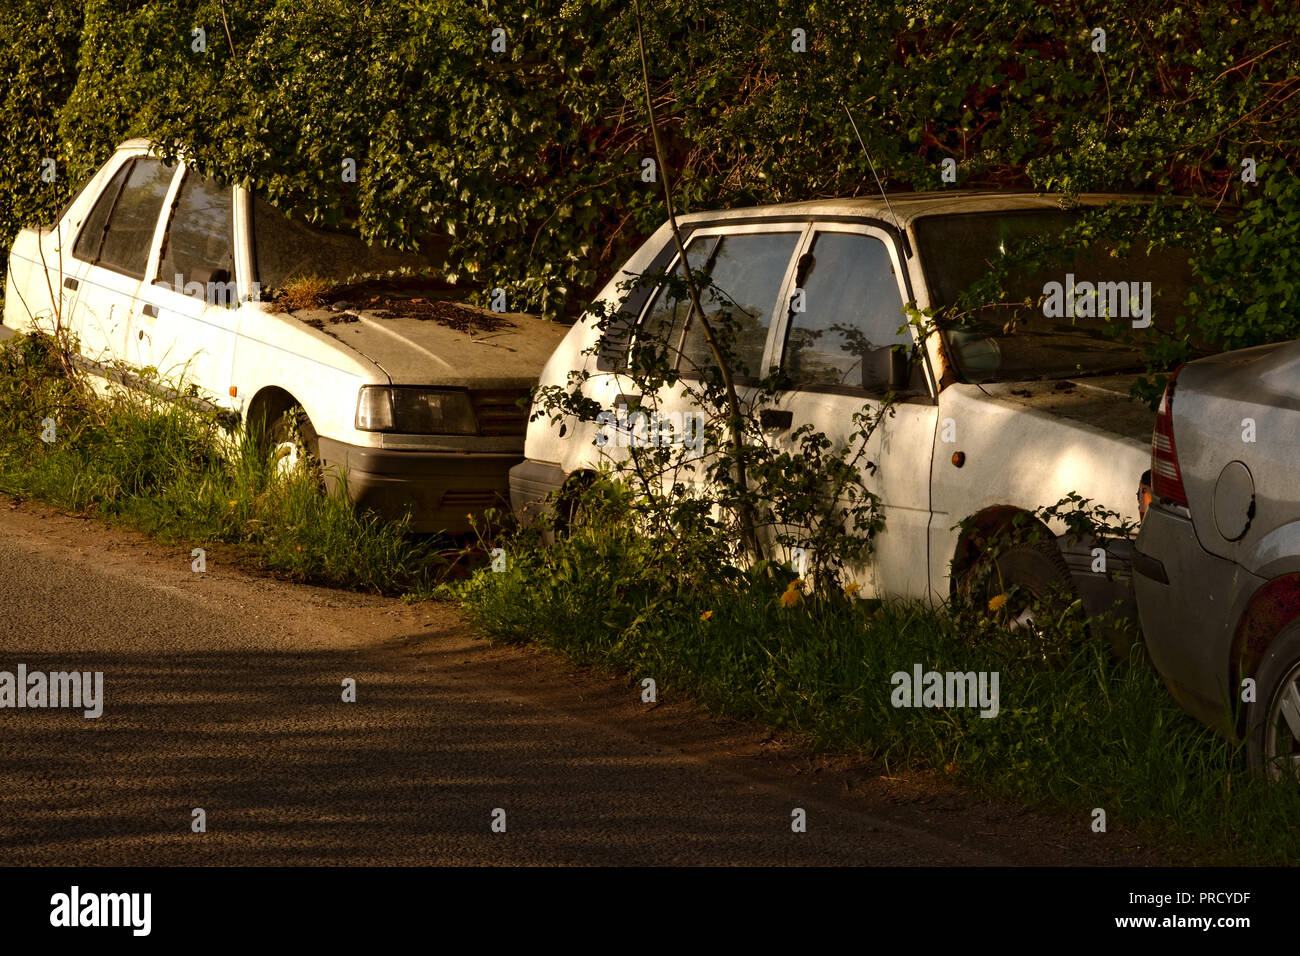 Automobili abbandonate nestle nel sottobosco della splendida campagna nel Surrey, Regno Unito Foto Stock